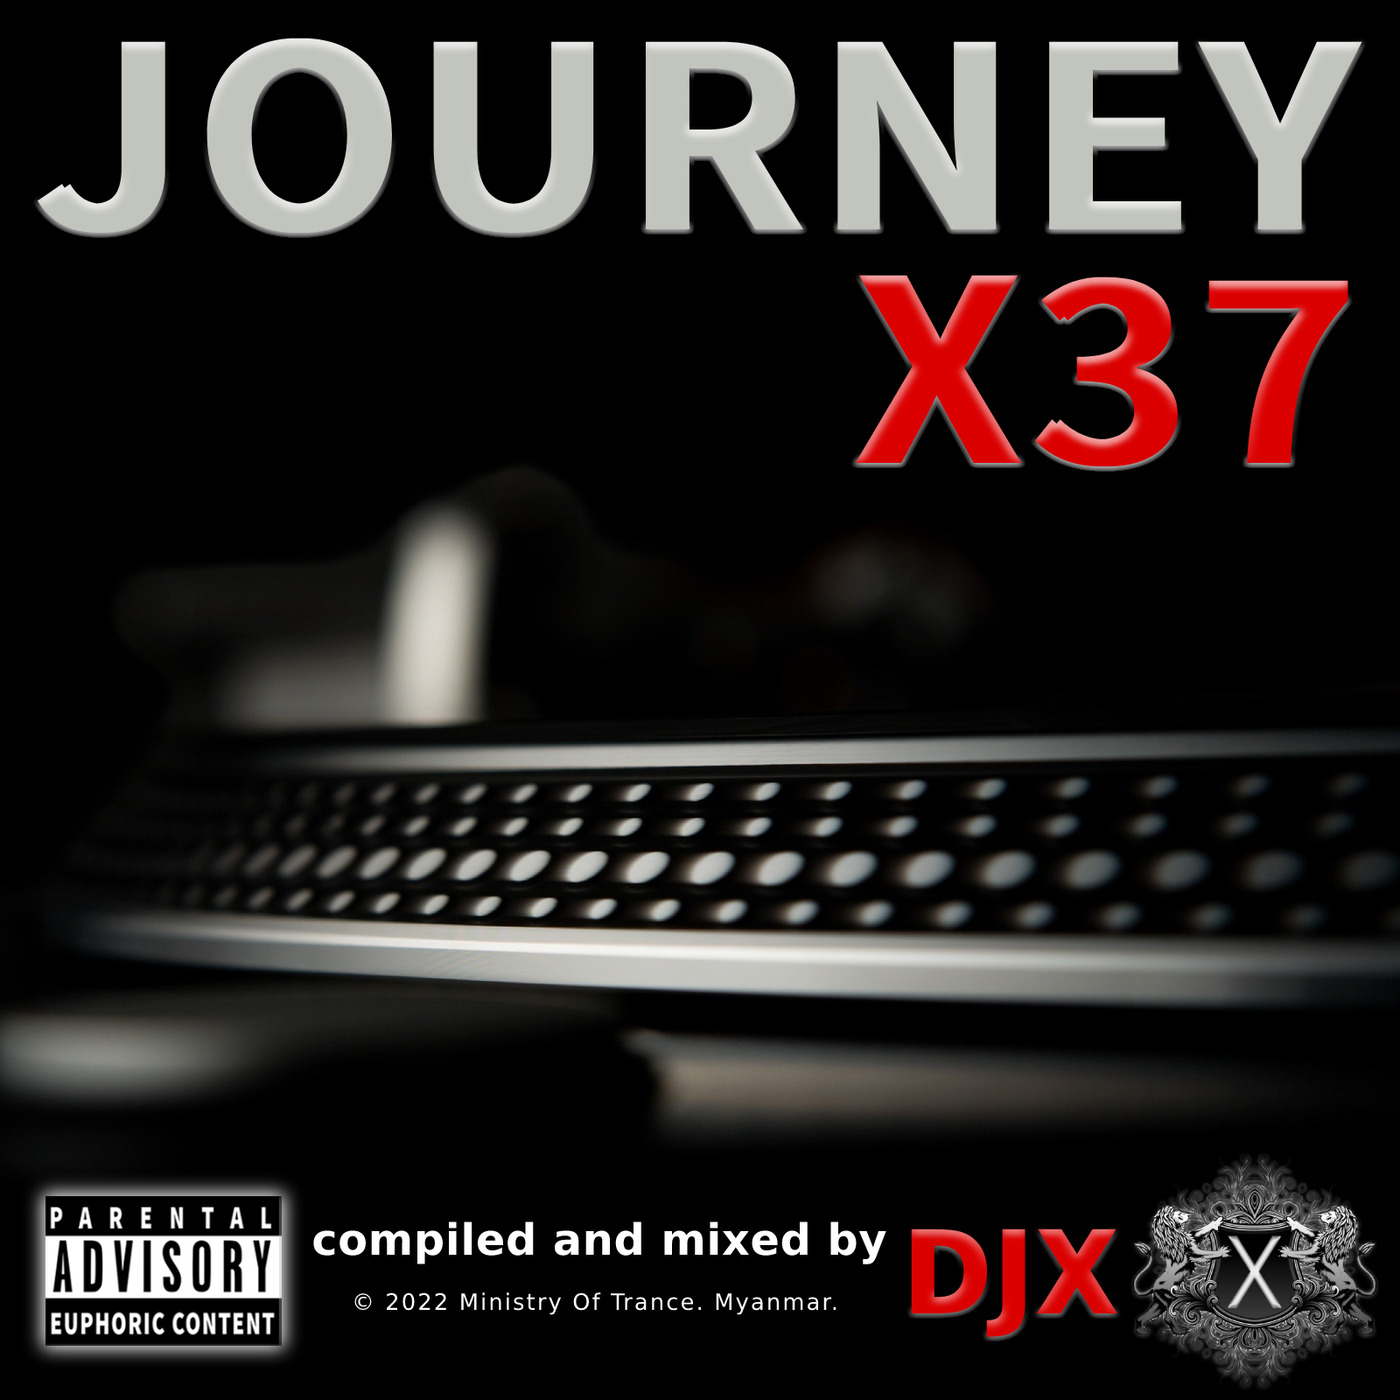 Journey X37